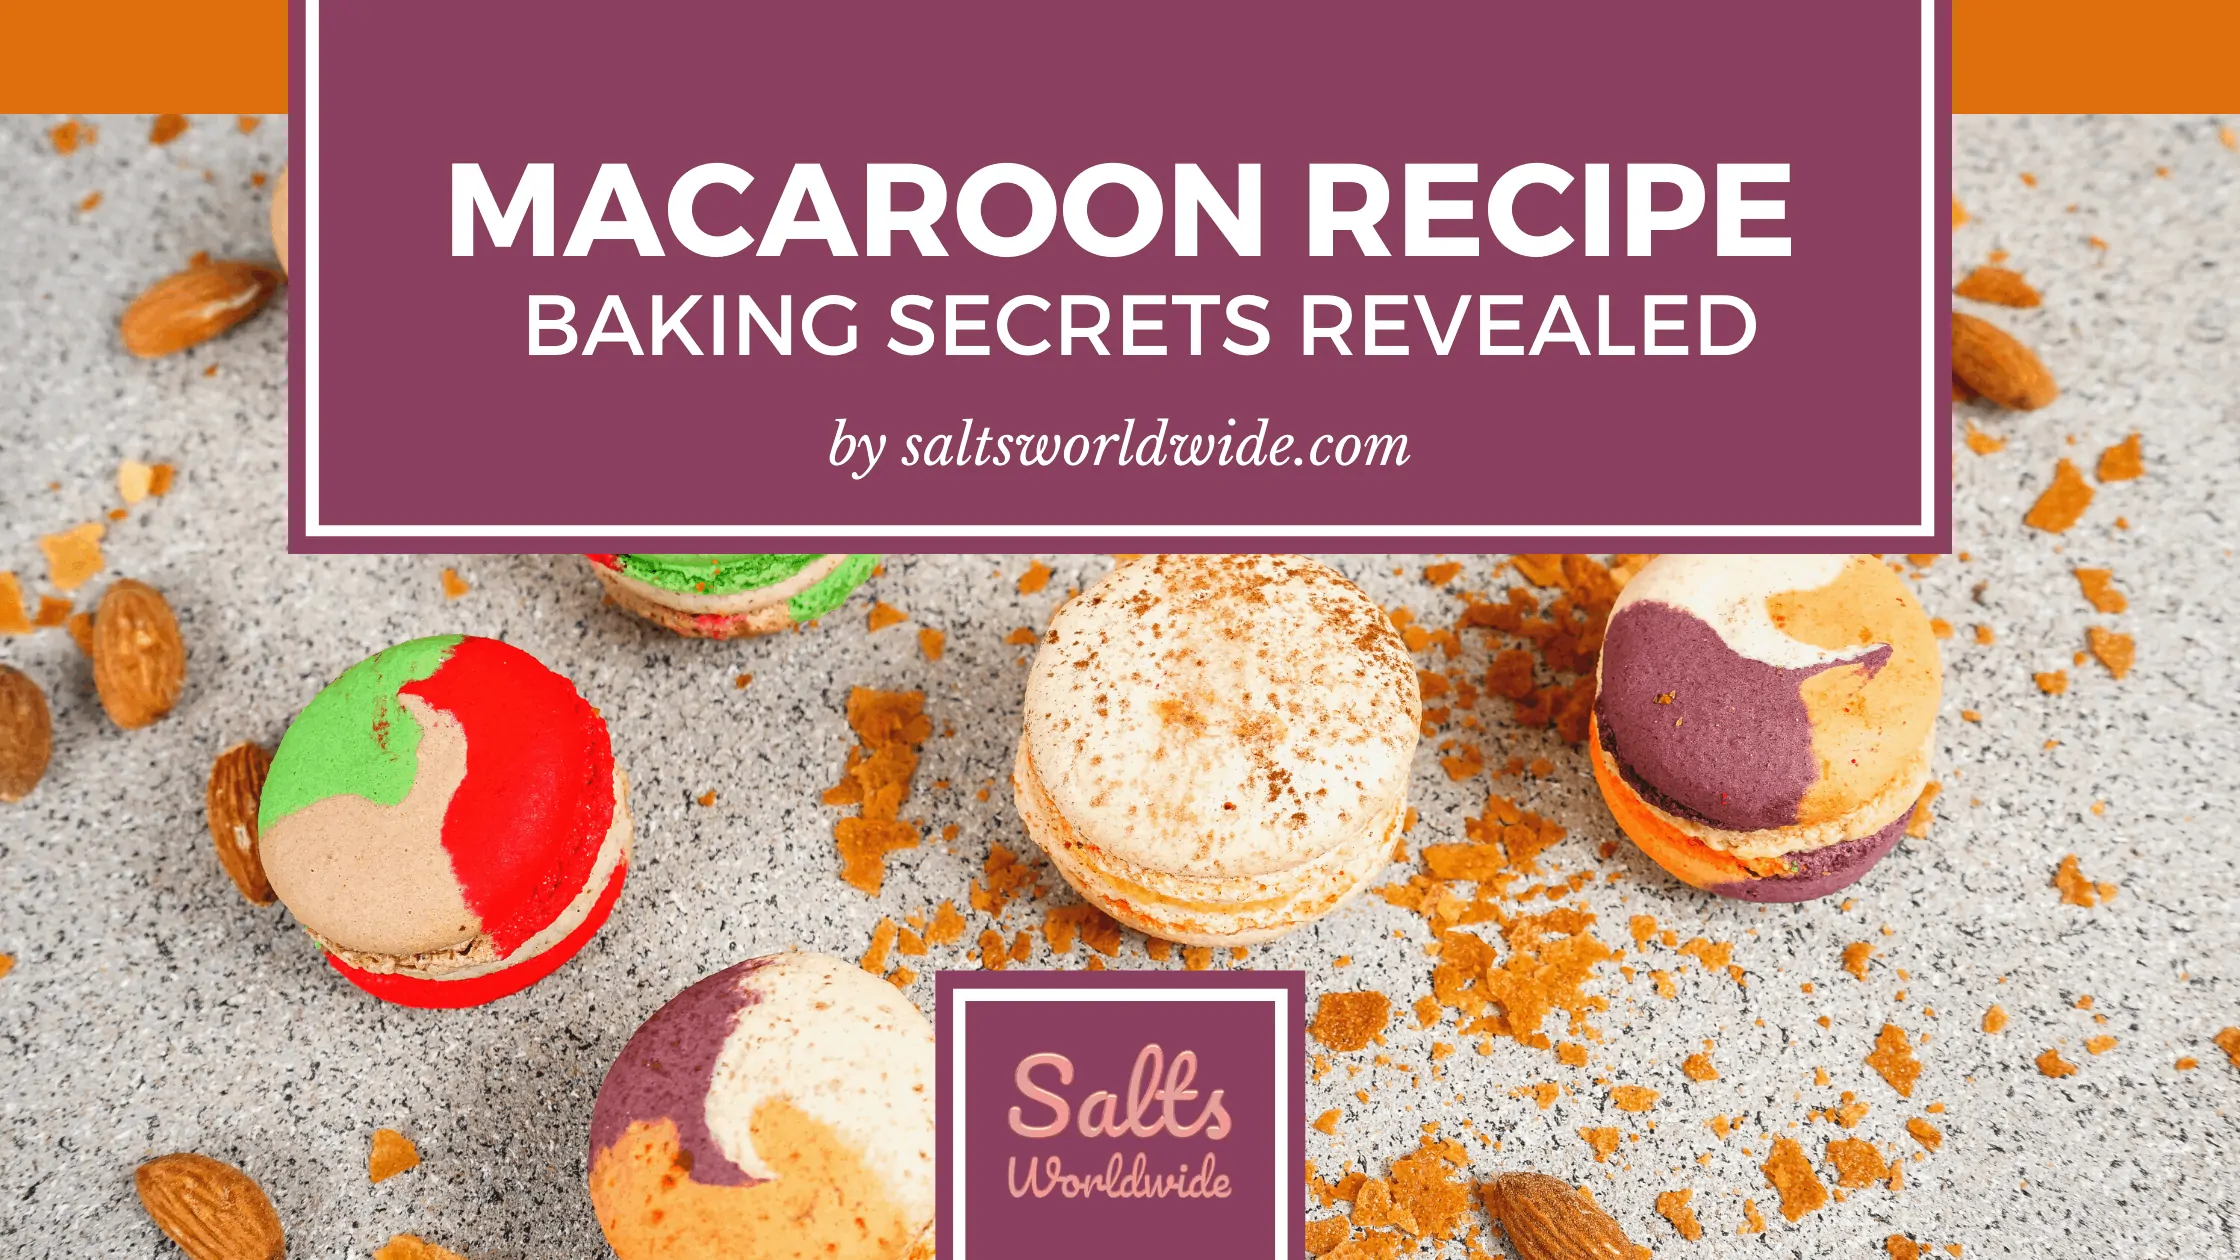 Macaroon Recipe Baking Secrets Revealed